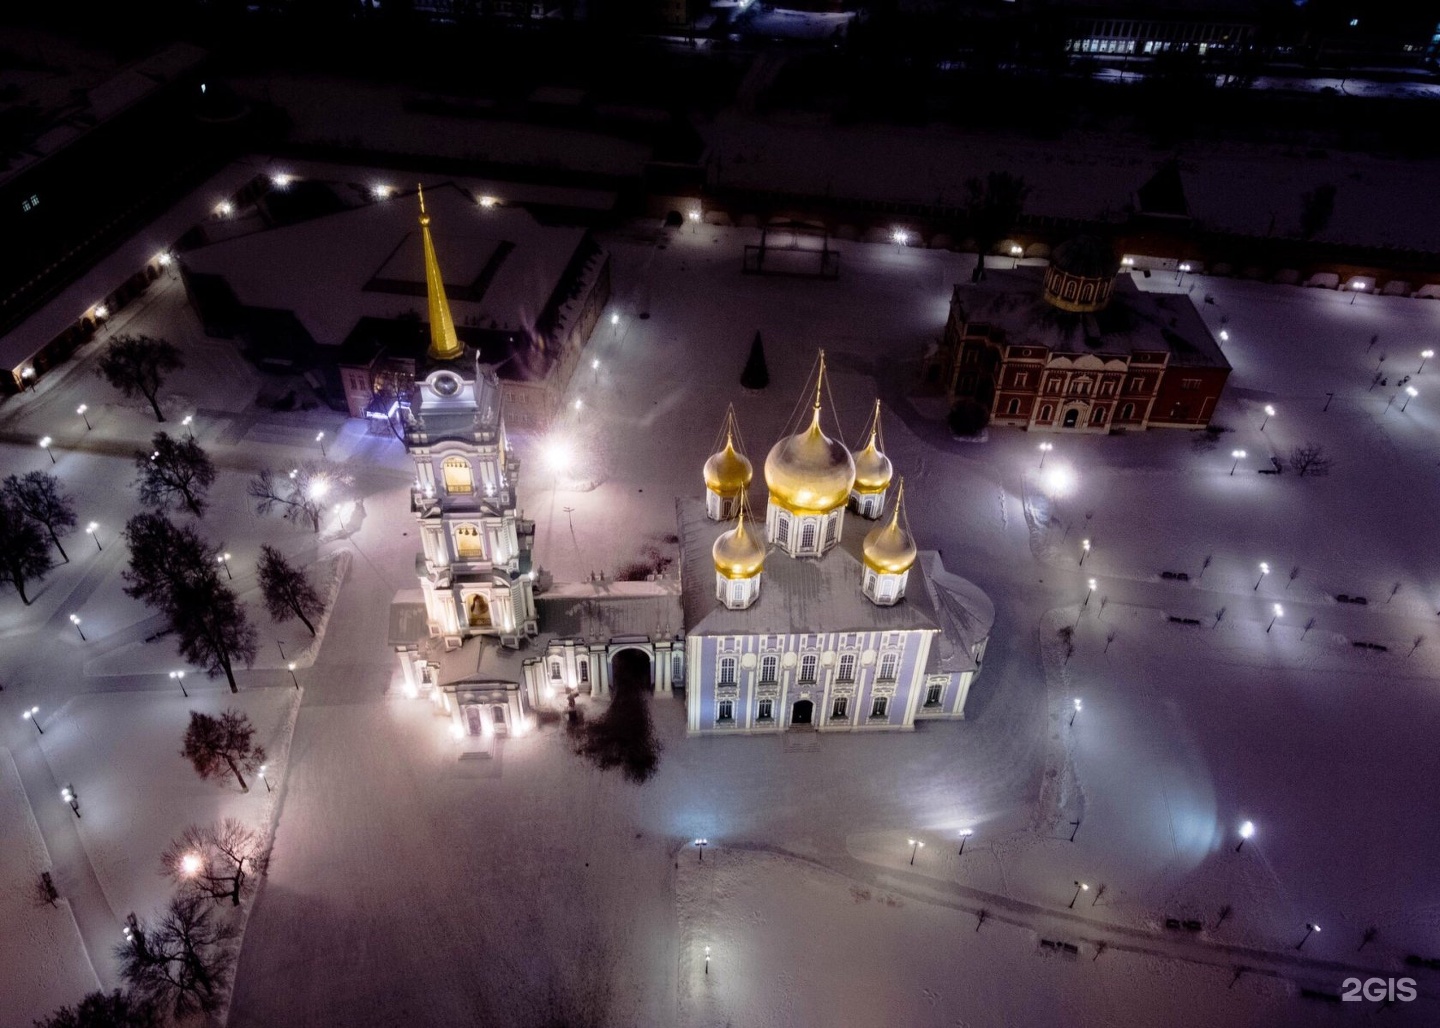 Тула успенский собор в кремле